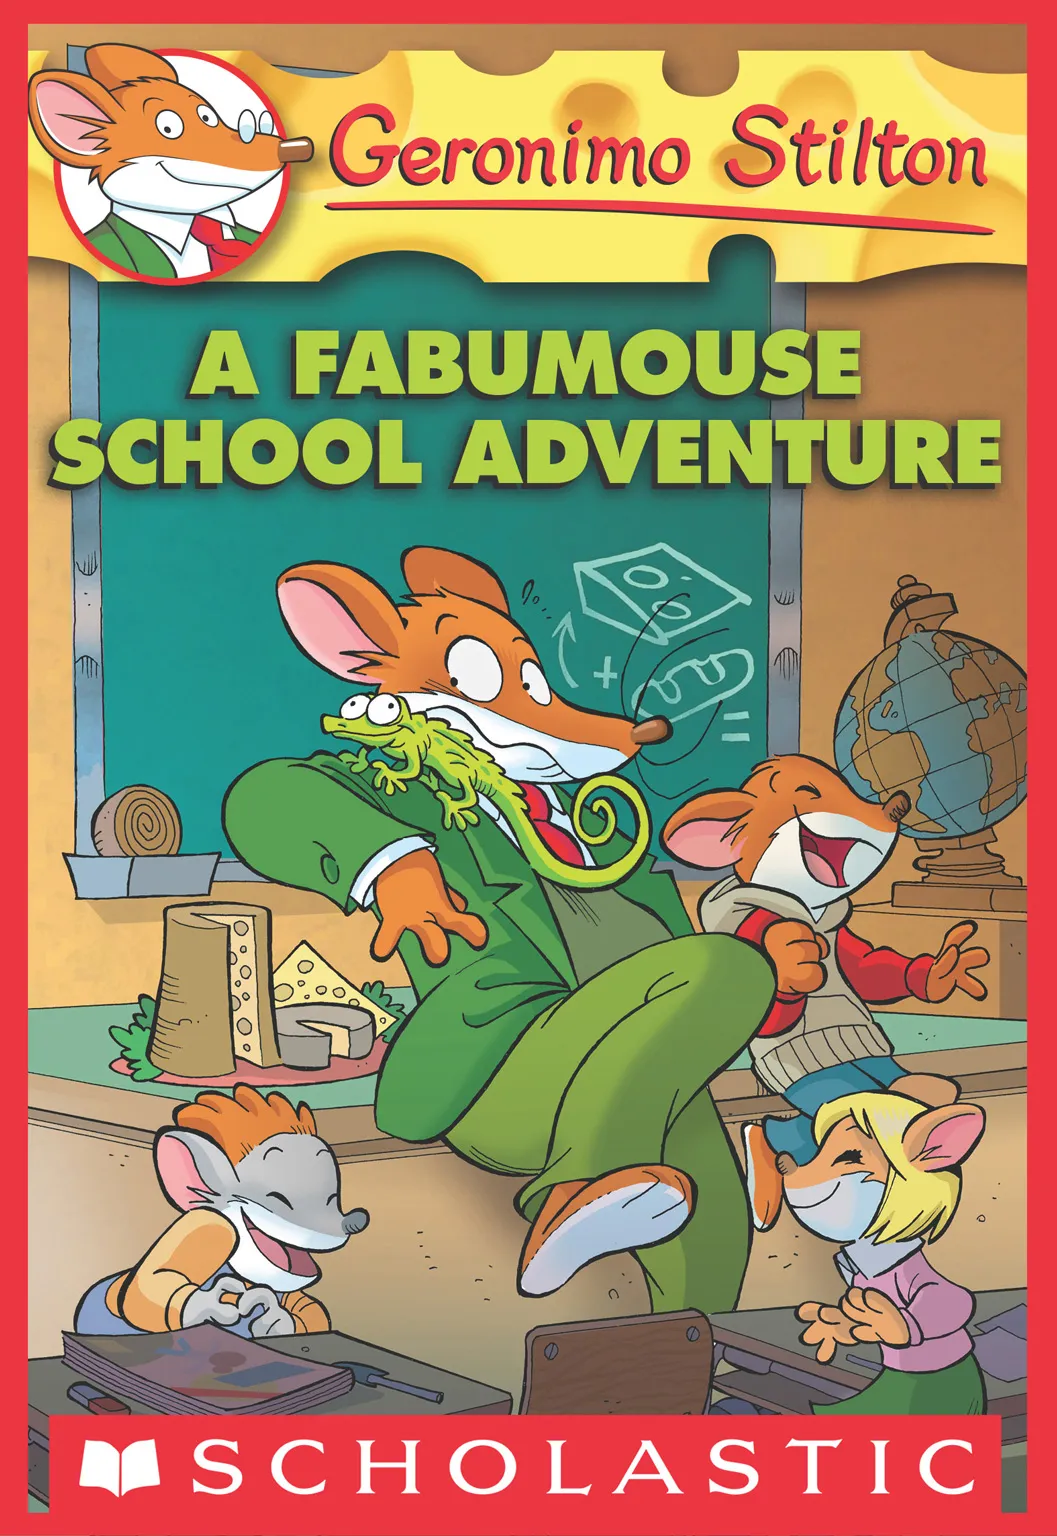 A Fabumouse School Adventure (Geronimo Stilton #38)